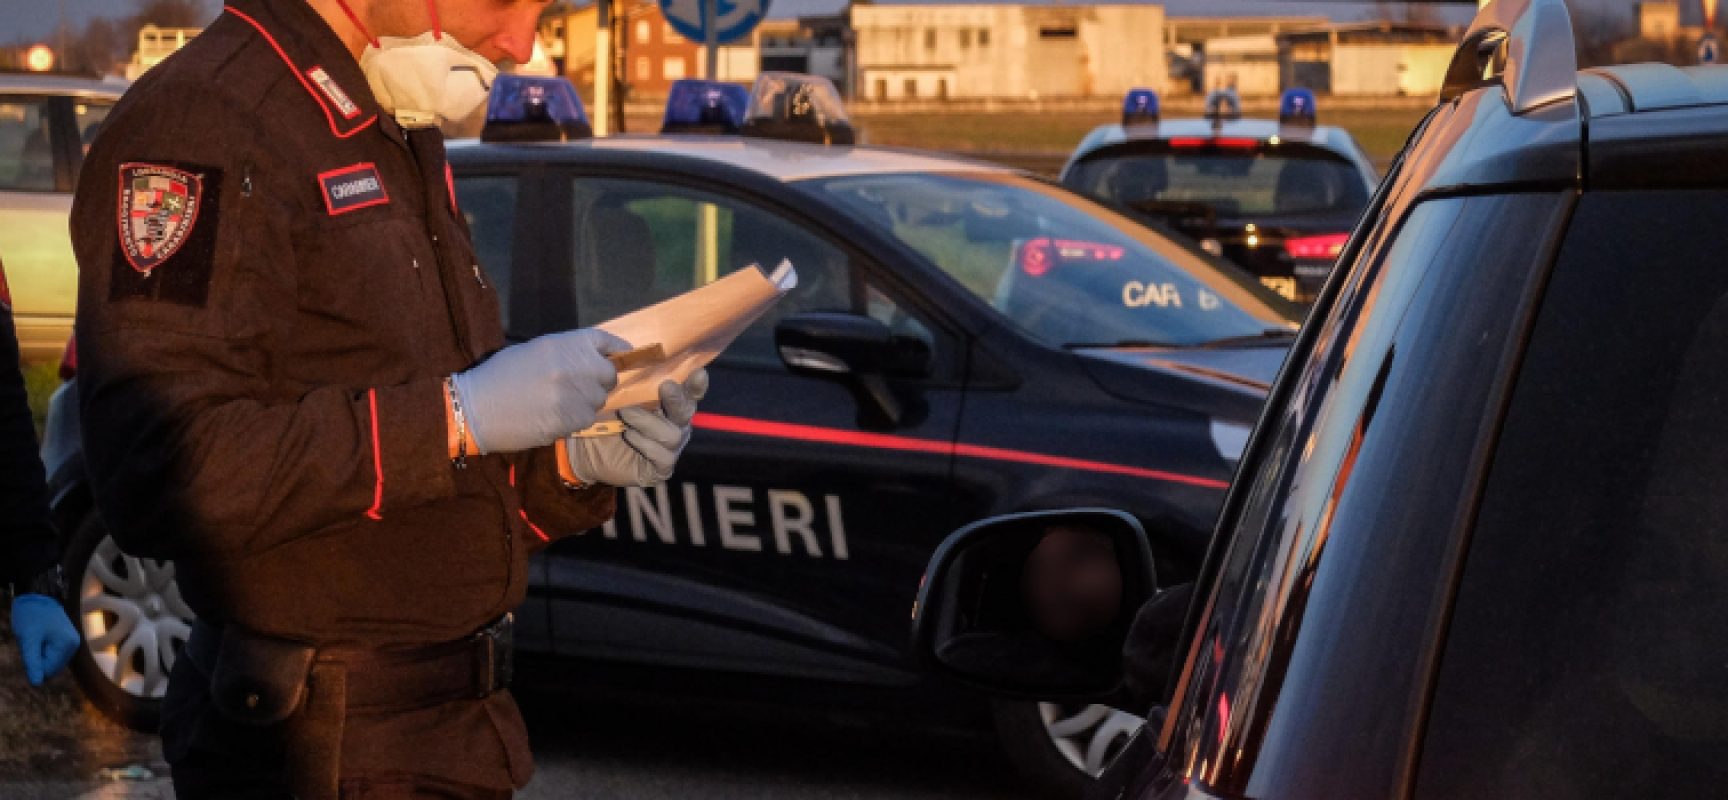 Carabinieri Bat impegnati in attività di controllo per rispetto disposizioni anti-covid